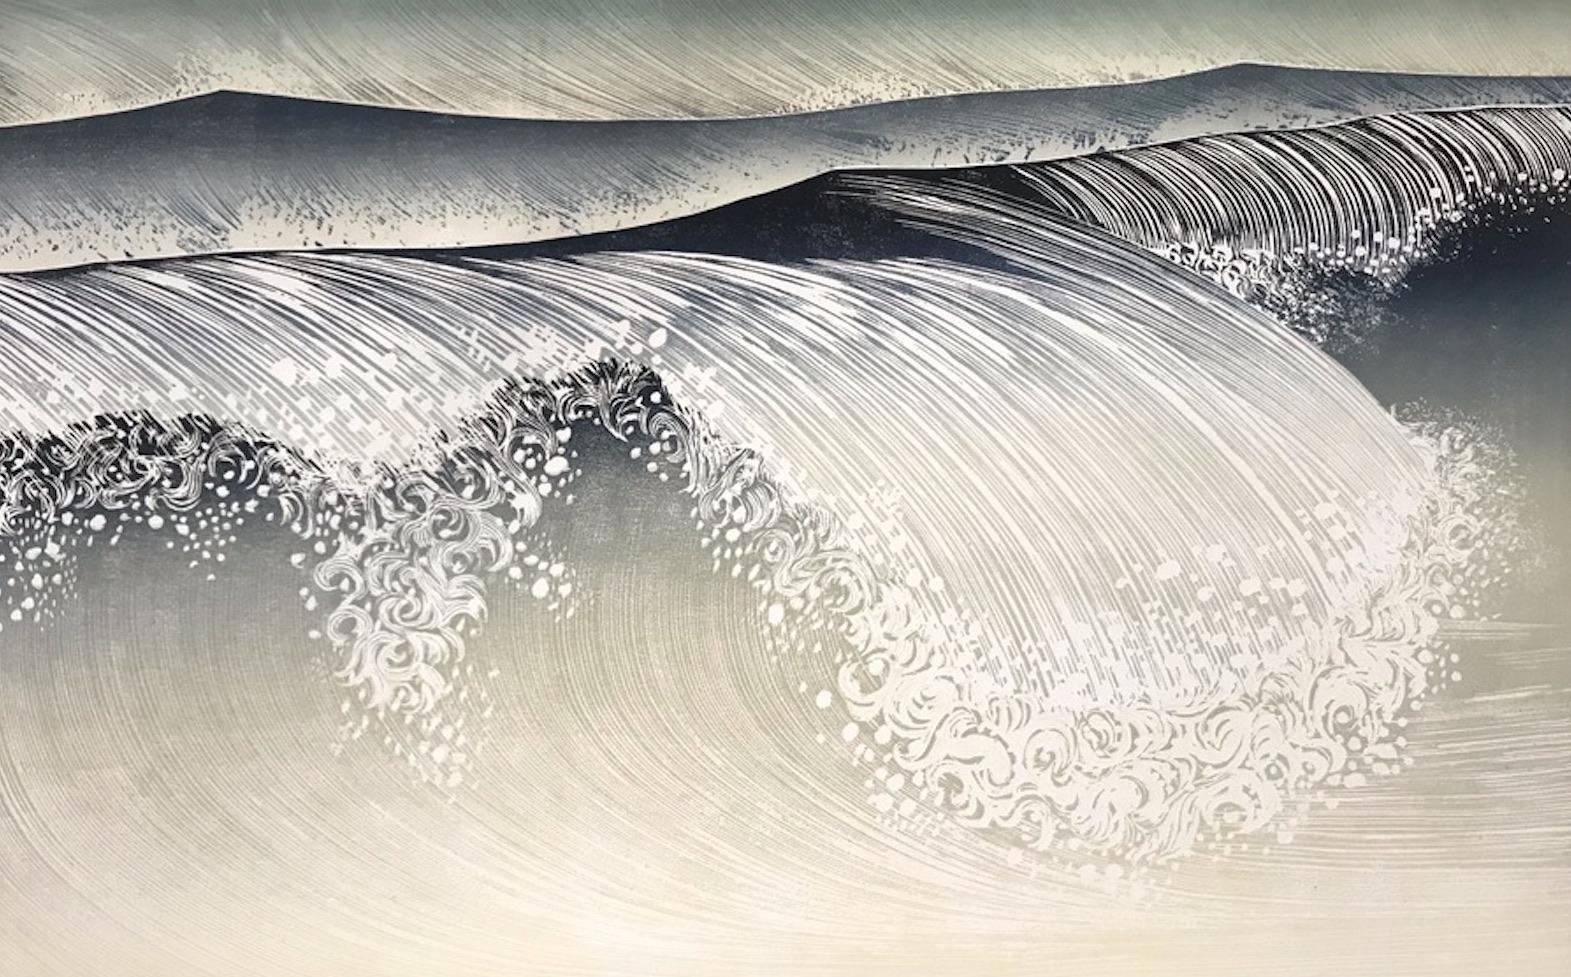 Shorebreak, gravure sur bois de style japonais, impression contemporaine de paysage marin faite à la main,